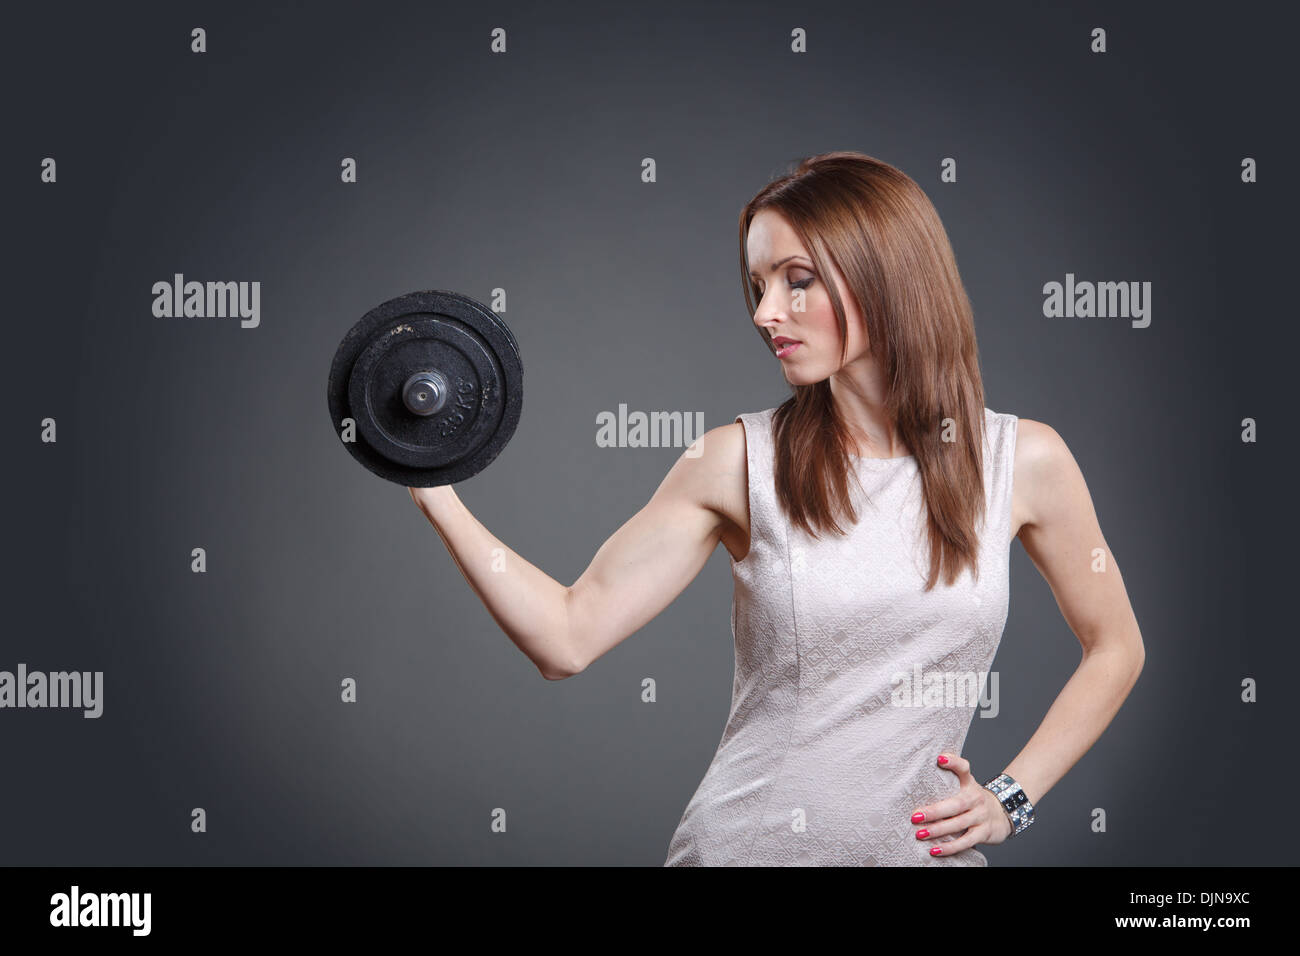 Studioportrait für eine weibliche Büroangestellte mit starken Bizeps Stockfoto